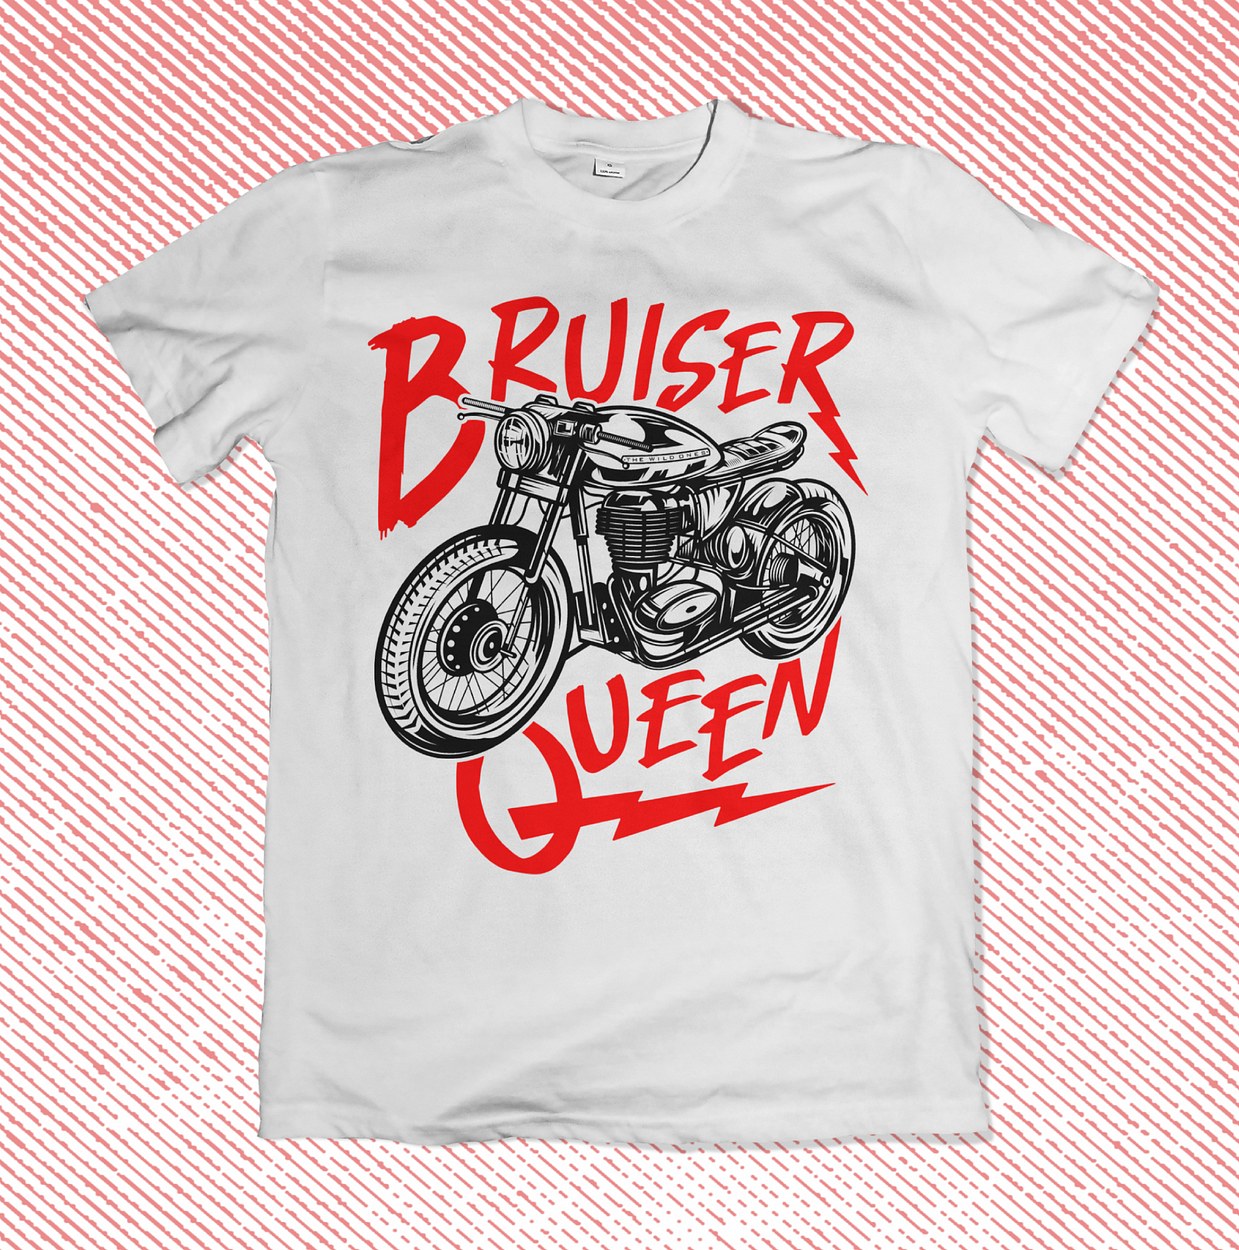 Bruiser Queen - Motorcycle Tee